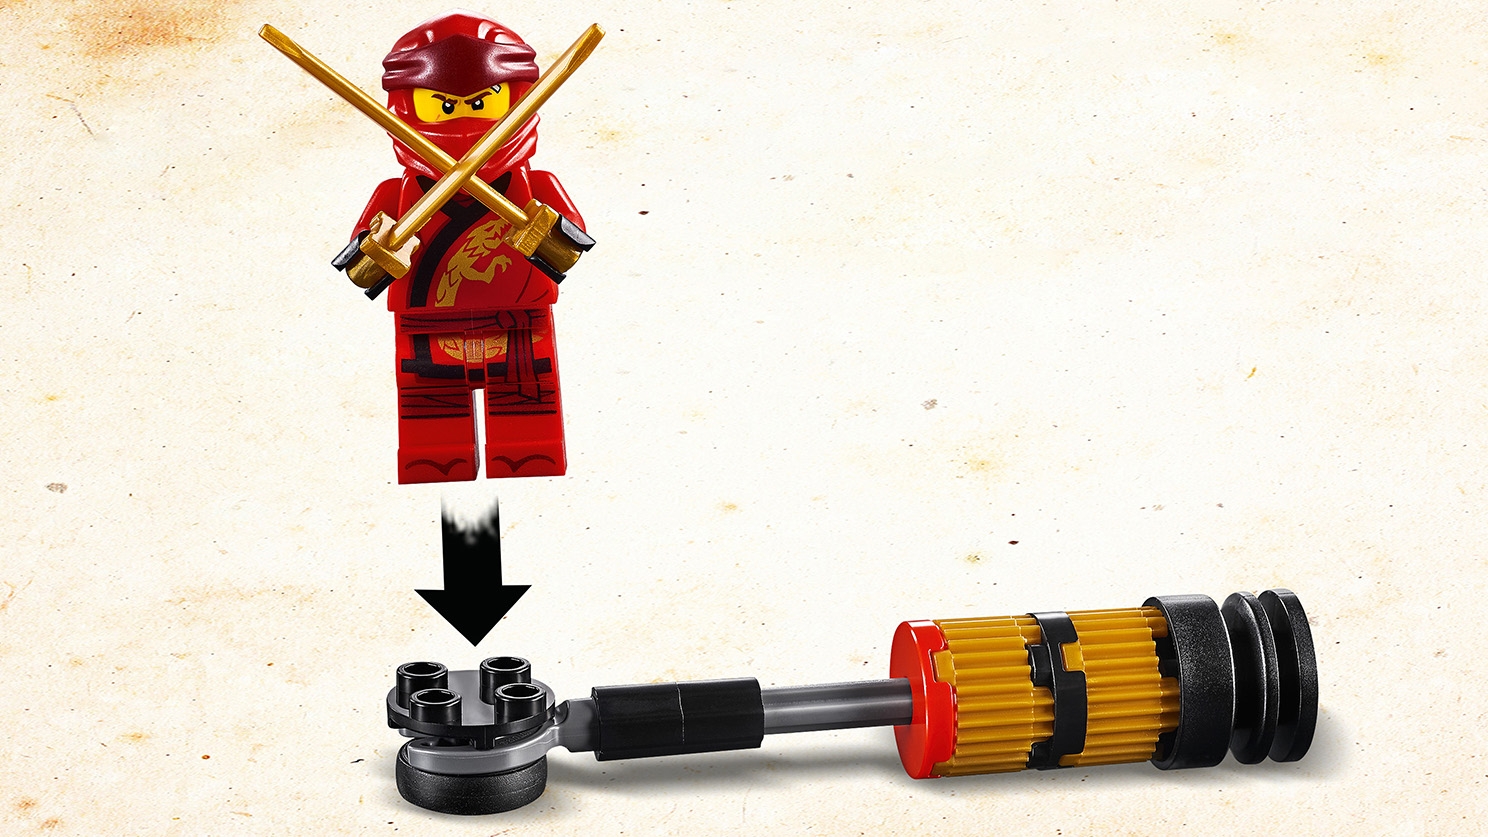 70680 MONASTERY TRAINING lego legos set NEW ninjago ninja KAI NYA Samurai X